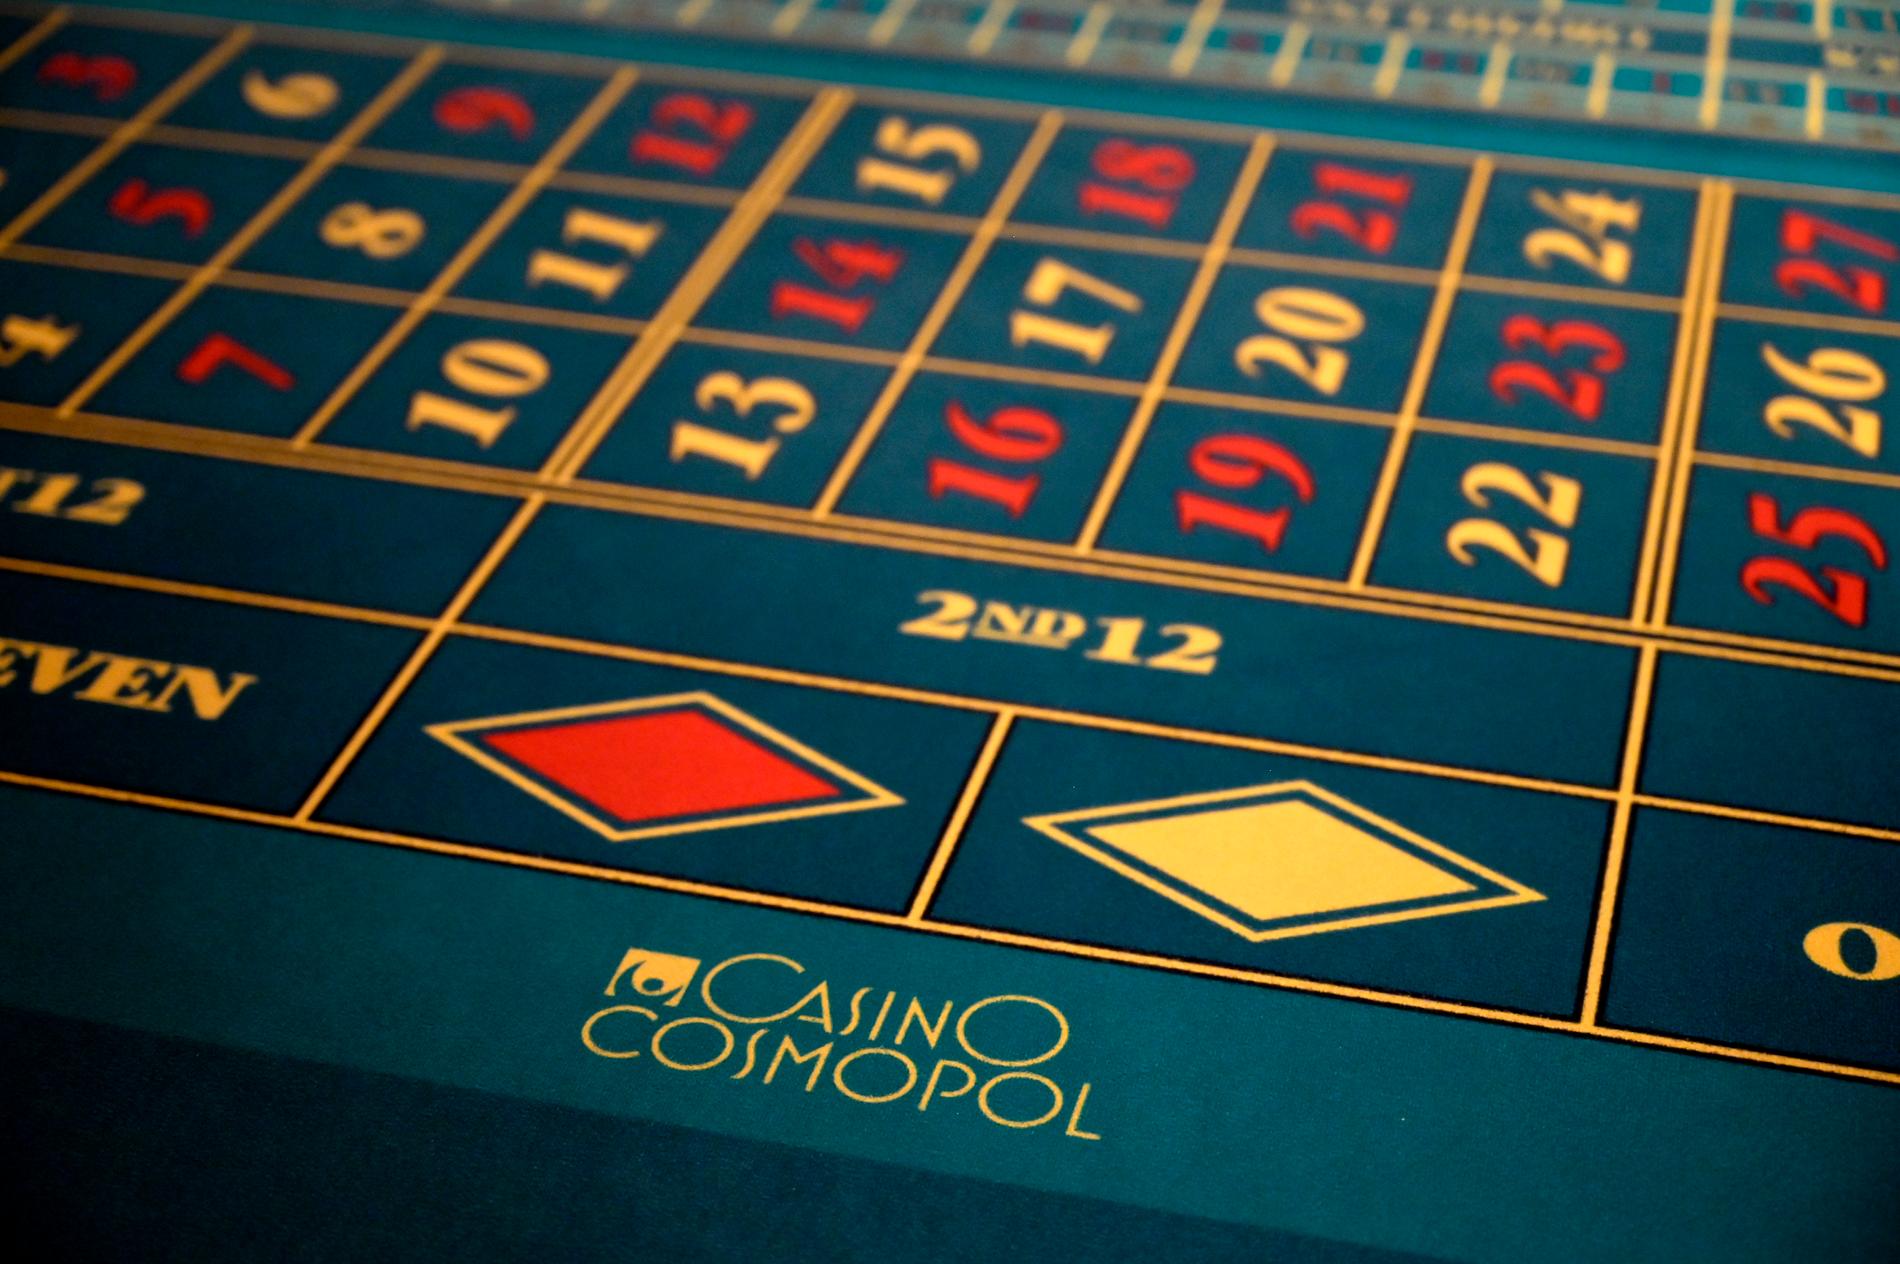 Spelandet på licensierade spel i Sverige minskade i fjol, bland annat hos statliga Casino Cosmopol. Arkivbild